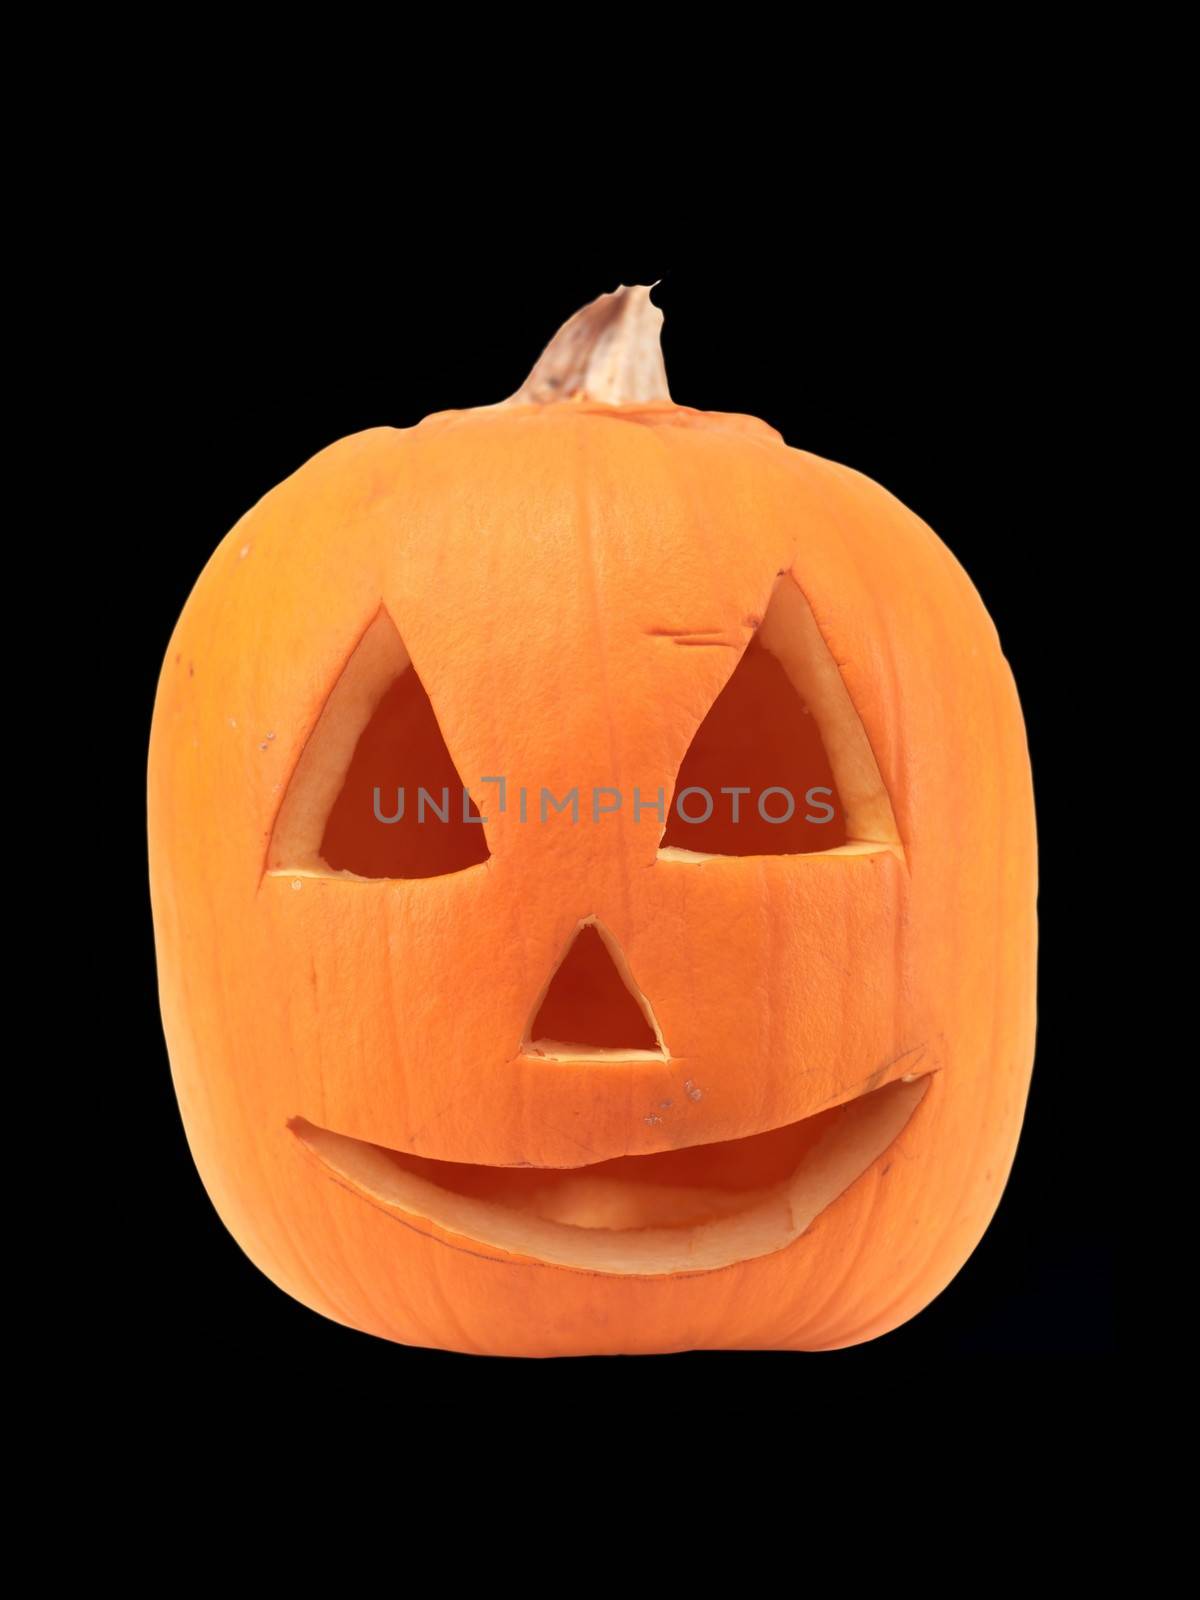 A close up shot of a halloween pumpkin